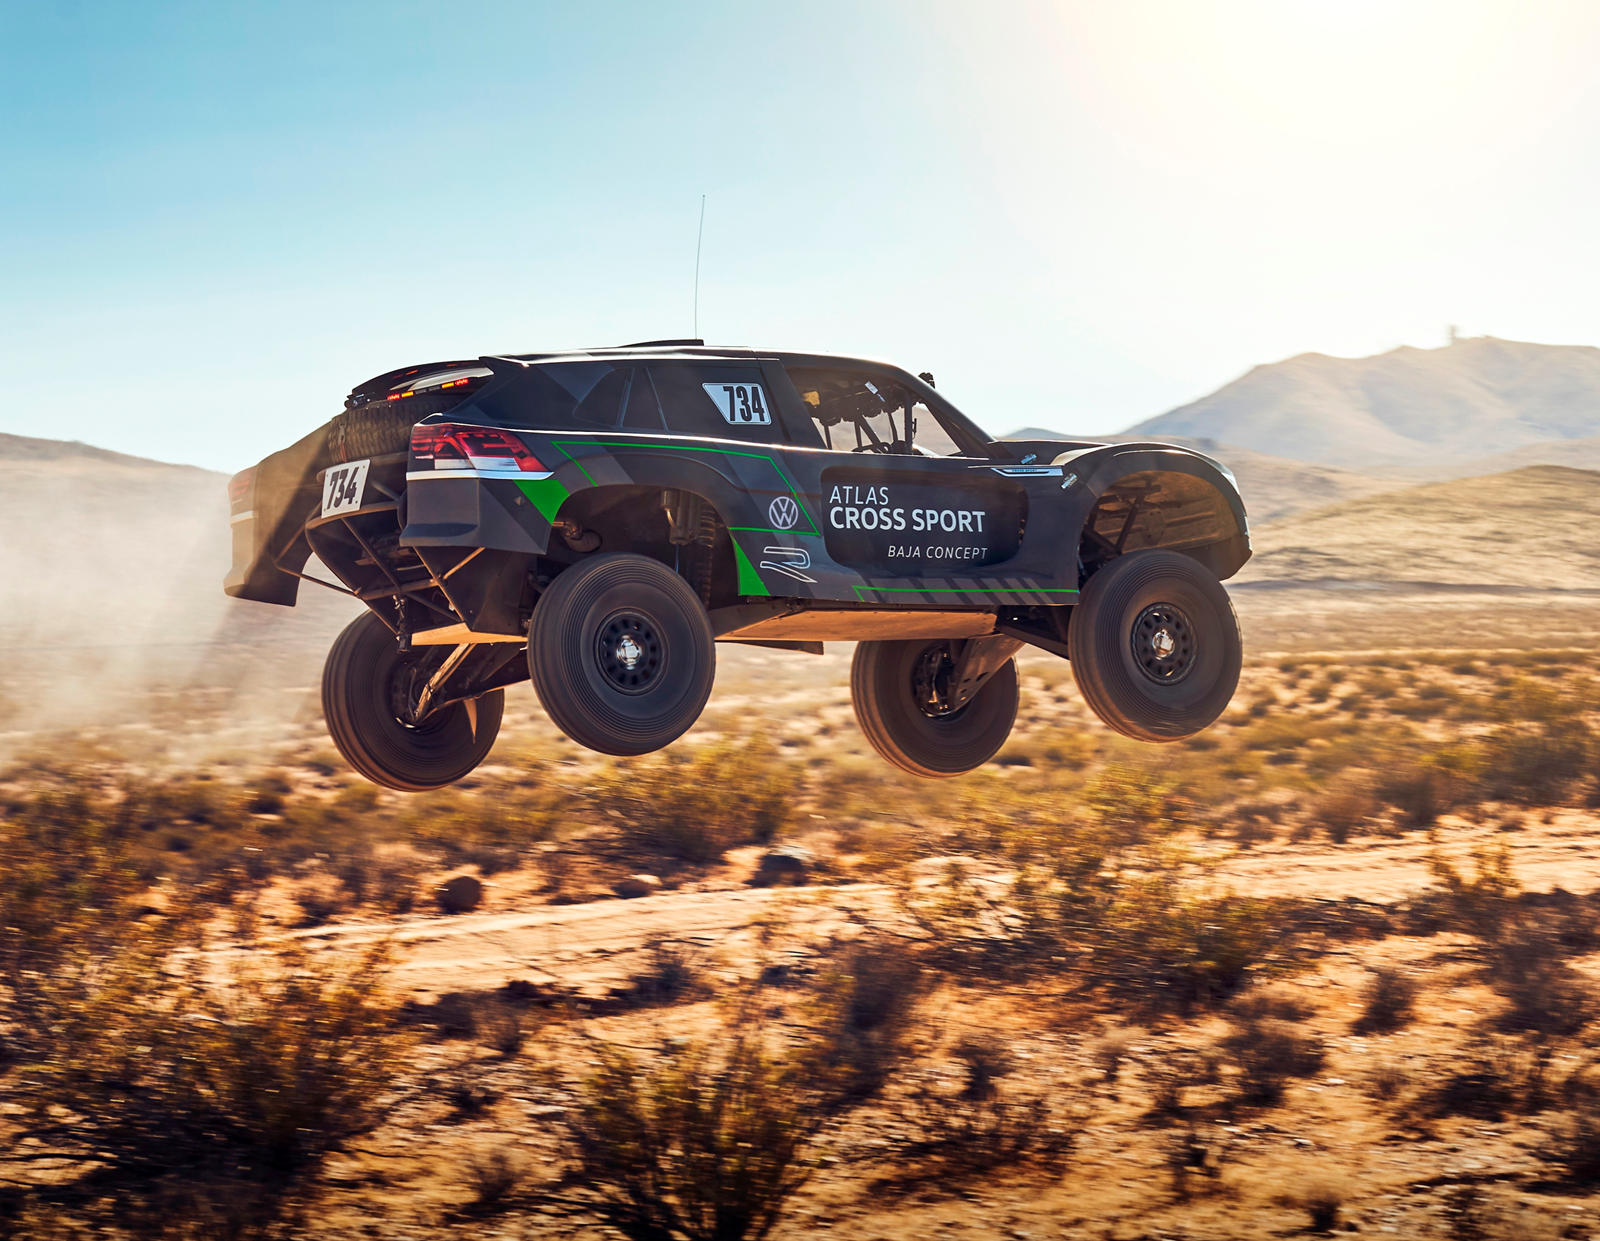 Atlas Cross Sport R оснащен 2-литровым четырехцилиндровым двигателем, изначально разработанным Volkswagen Motorsport для использования в программах WRC ad Rallycross.